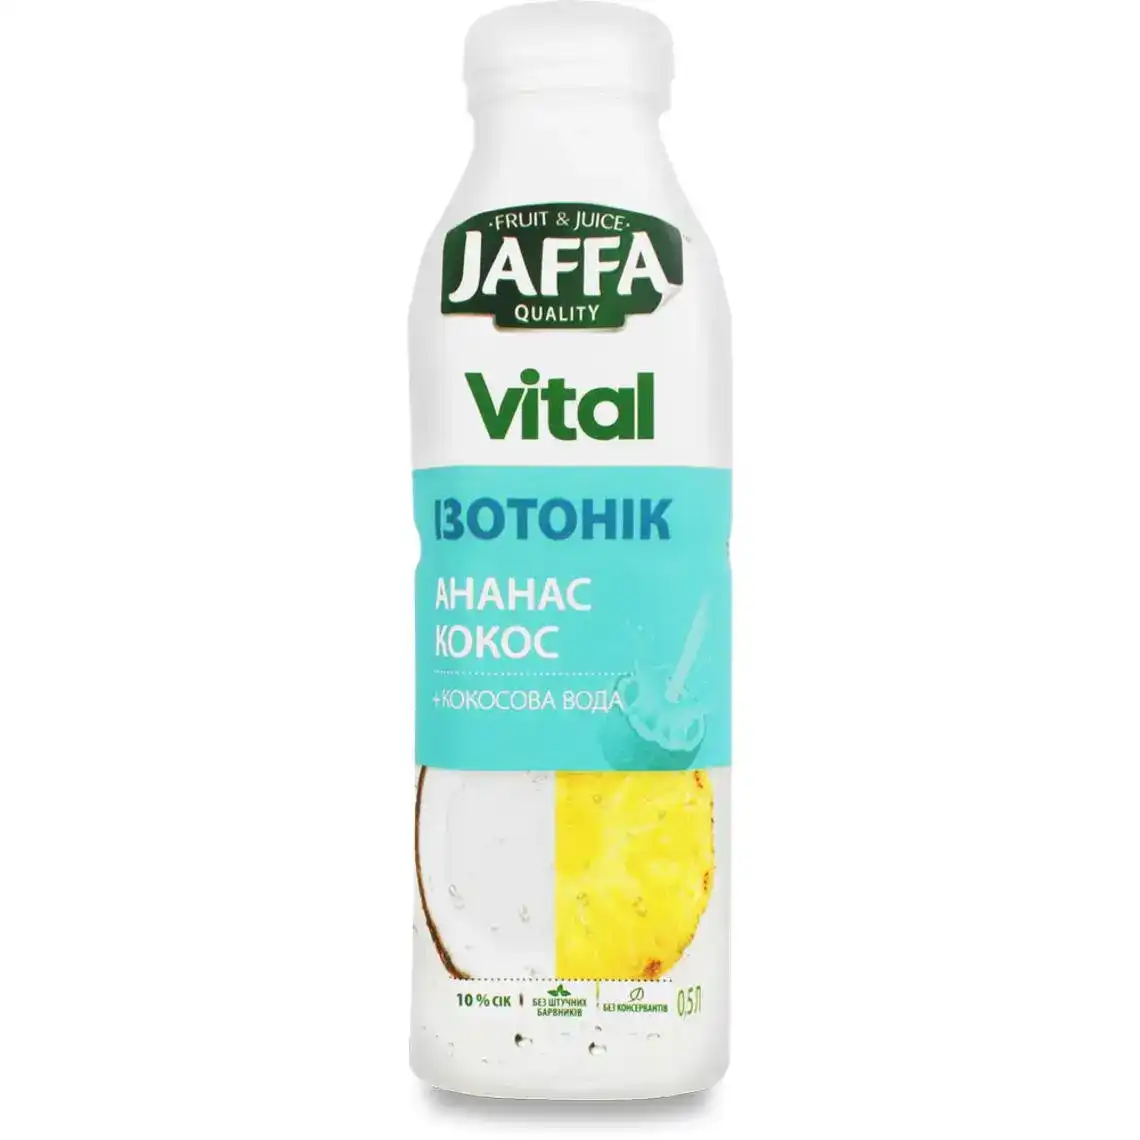 Напій соковий Jaffa Vital Isotonic Кокос-Ананас з кокосовою водою 0.5 л